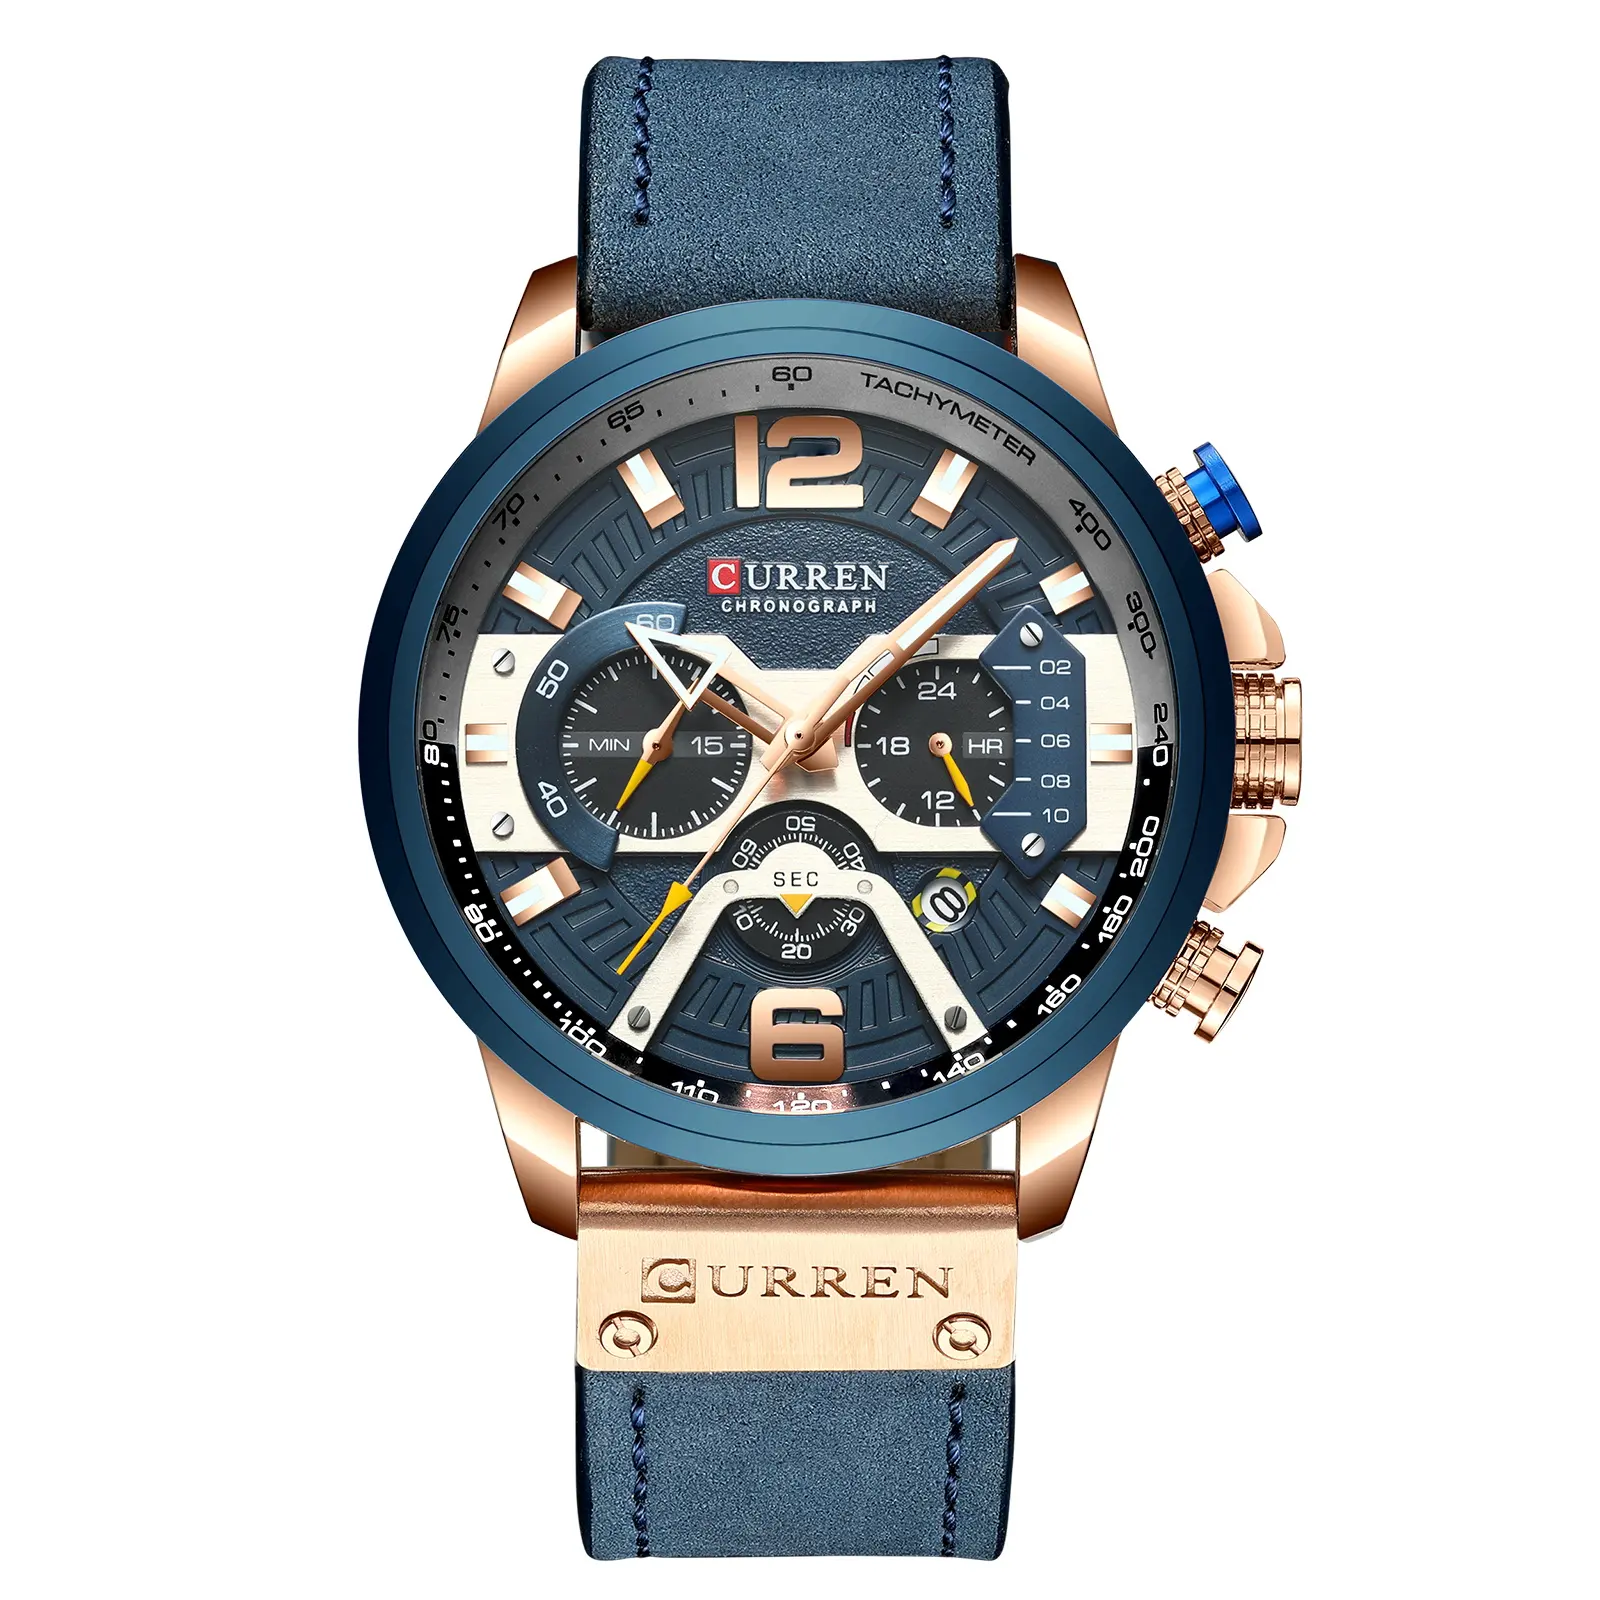 Montre Homme Curren 8329 Original Brand Leather Chronograph Watches Luxury Men Wrist Quartz Watch